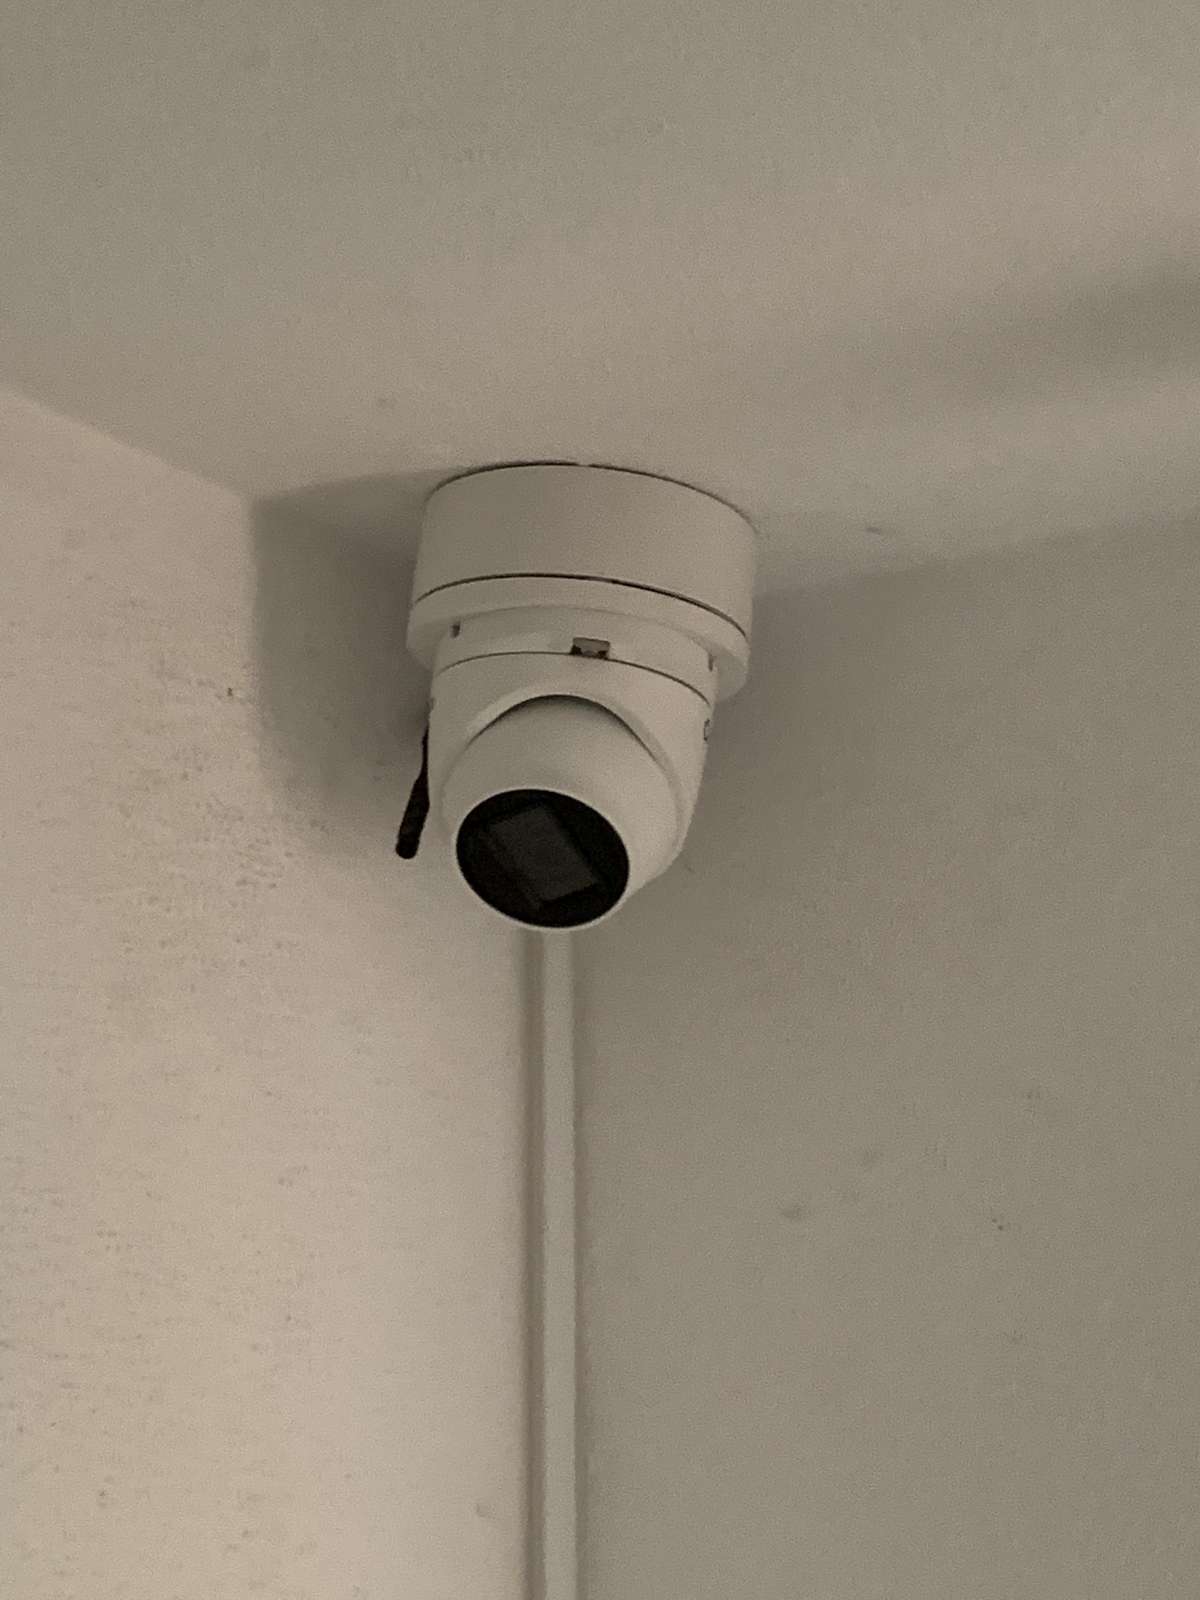 Técnico CCTV Certificado - Sintra - Instalação e Reparação de Câmaras de Vigilância